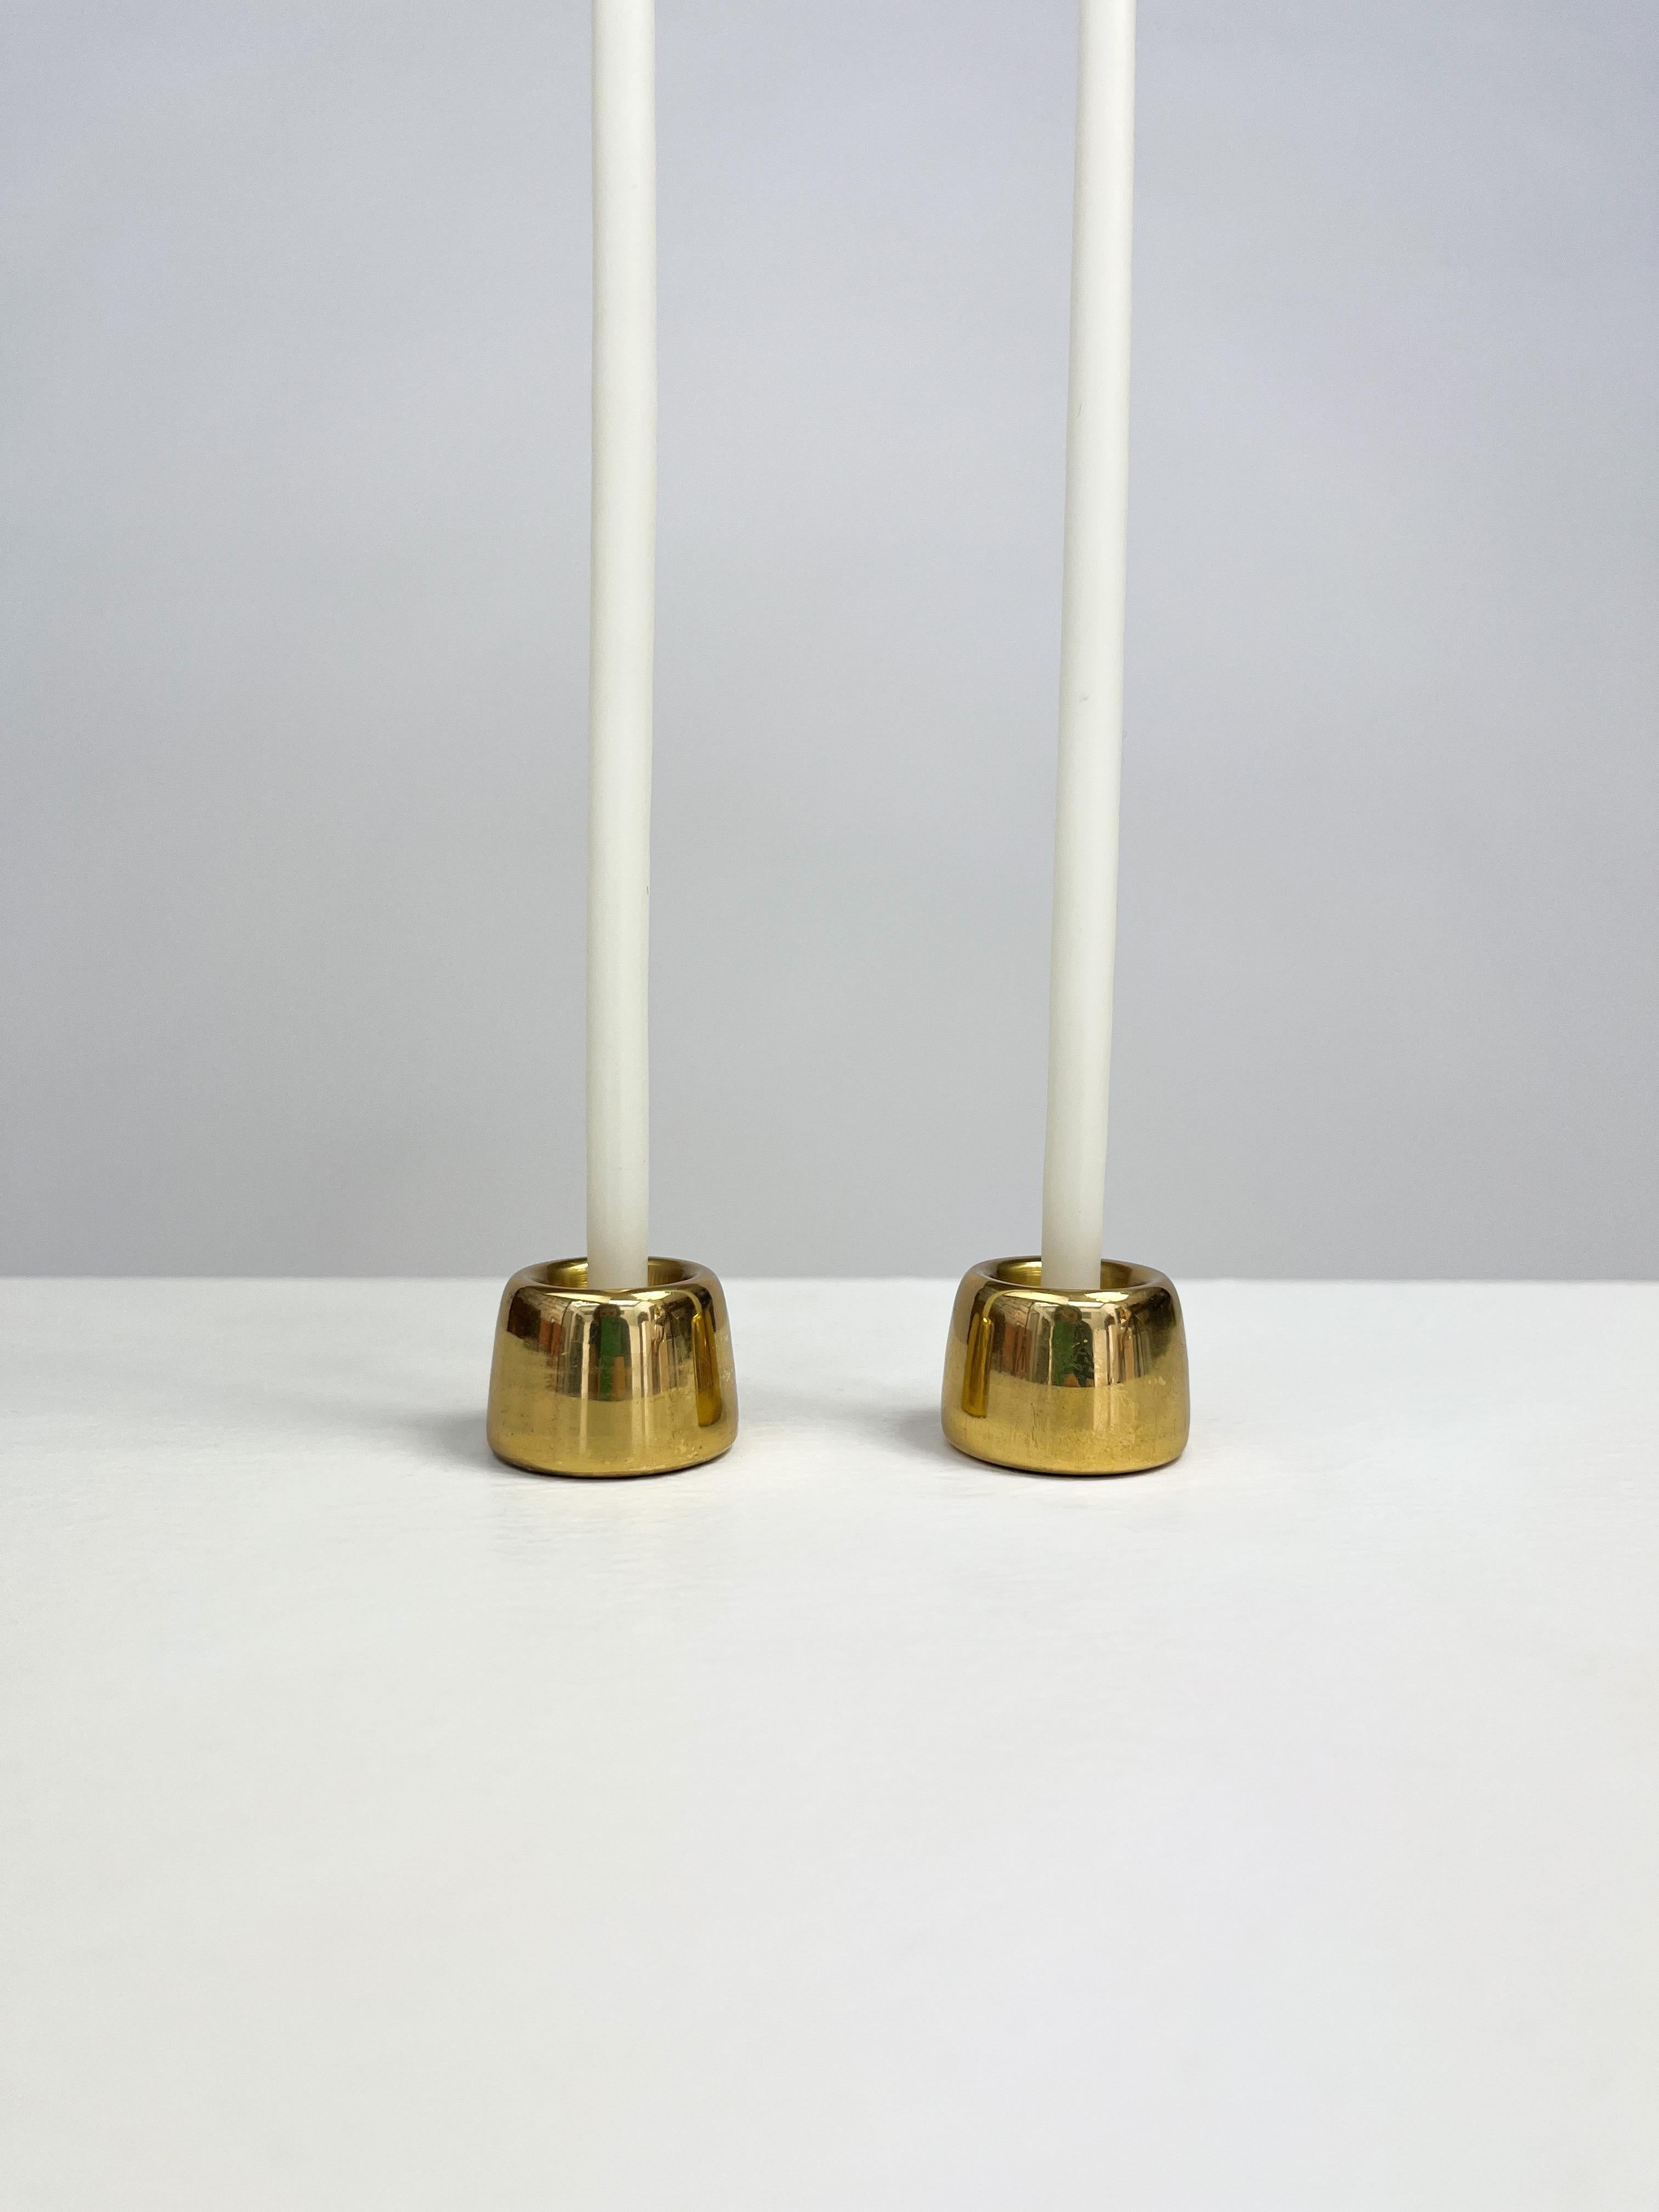 Paar Miniatur-Kerzenständer von Hans-Agne Jakobsson, Modell L 97 für dünne lange Kerzen, handgefertigt von der Hans-Agne Jakobsson AB in Schweden, 1960er Jahre.
 
Hergestellt aus massivem Messing, schön gealtert mit Patina. Darunter ist markiert.
